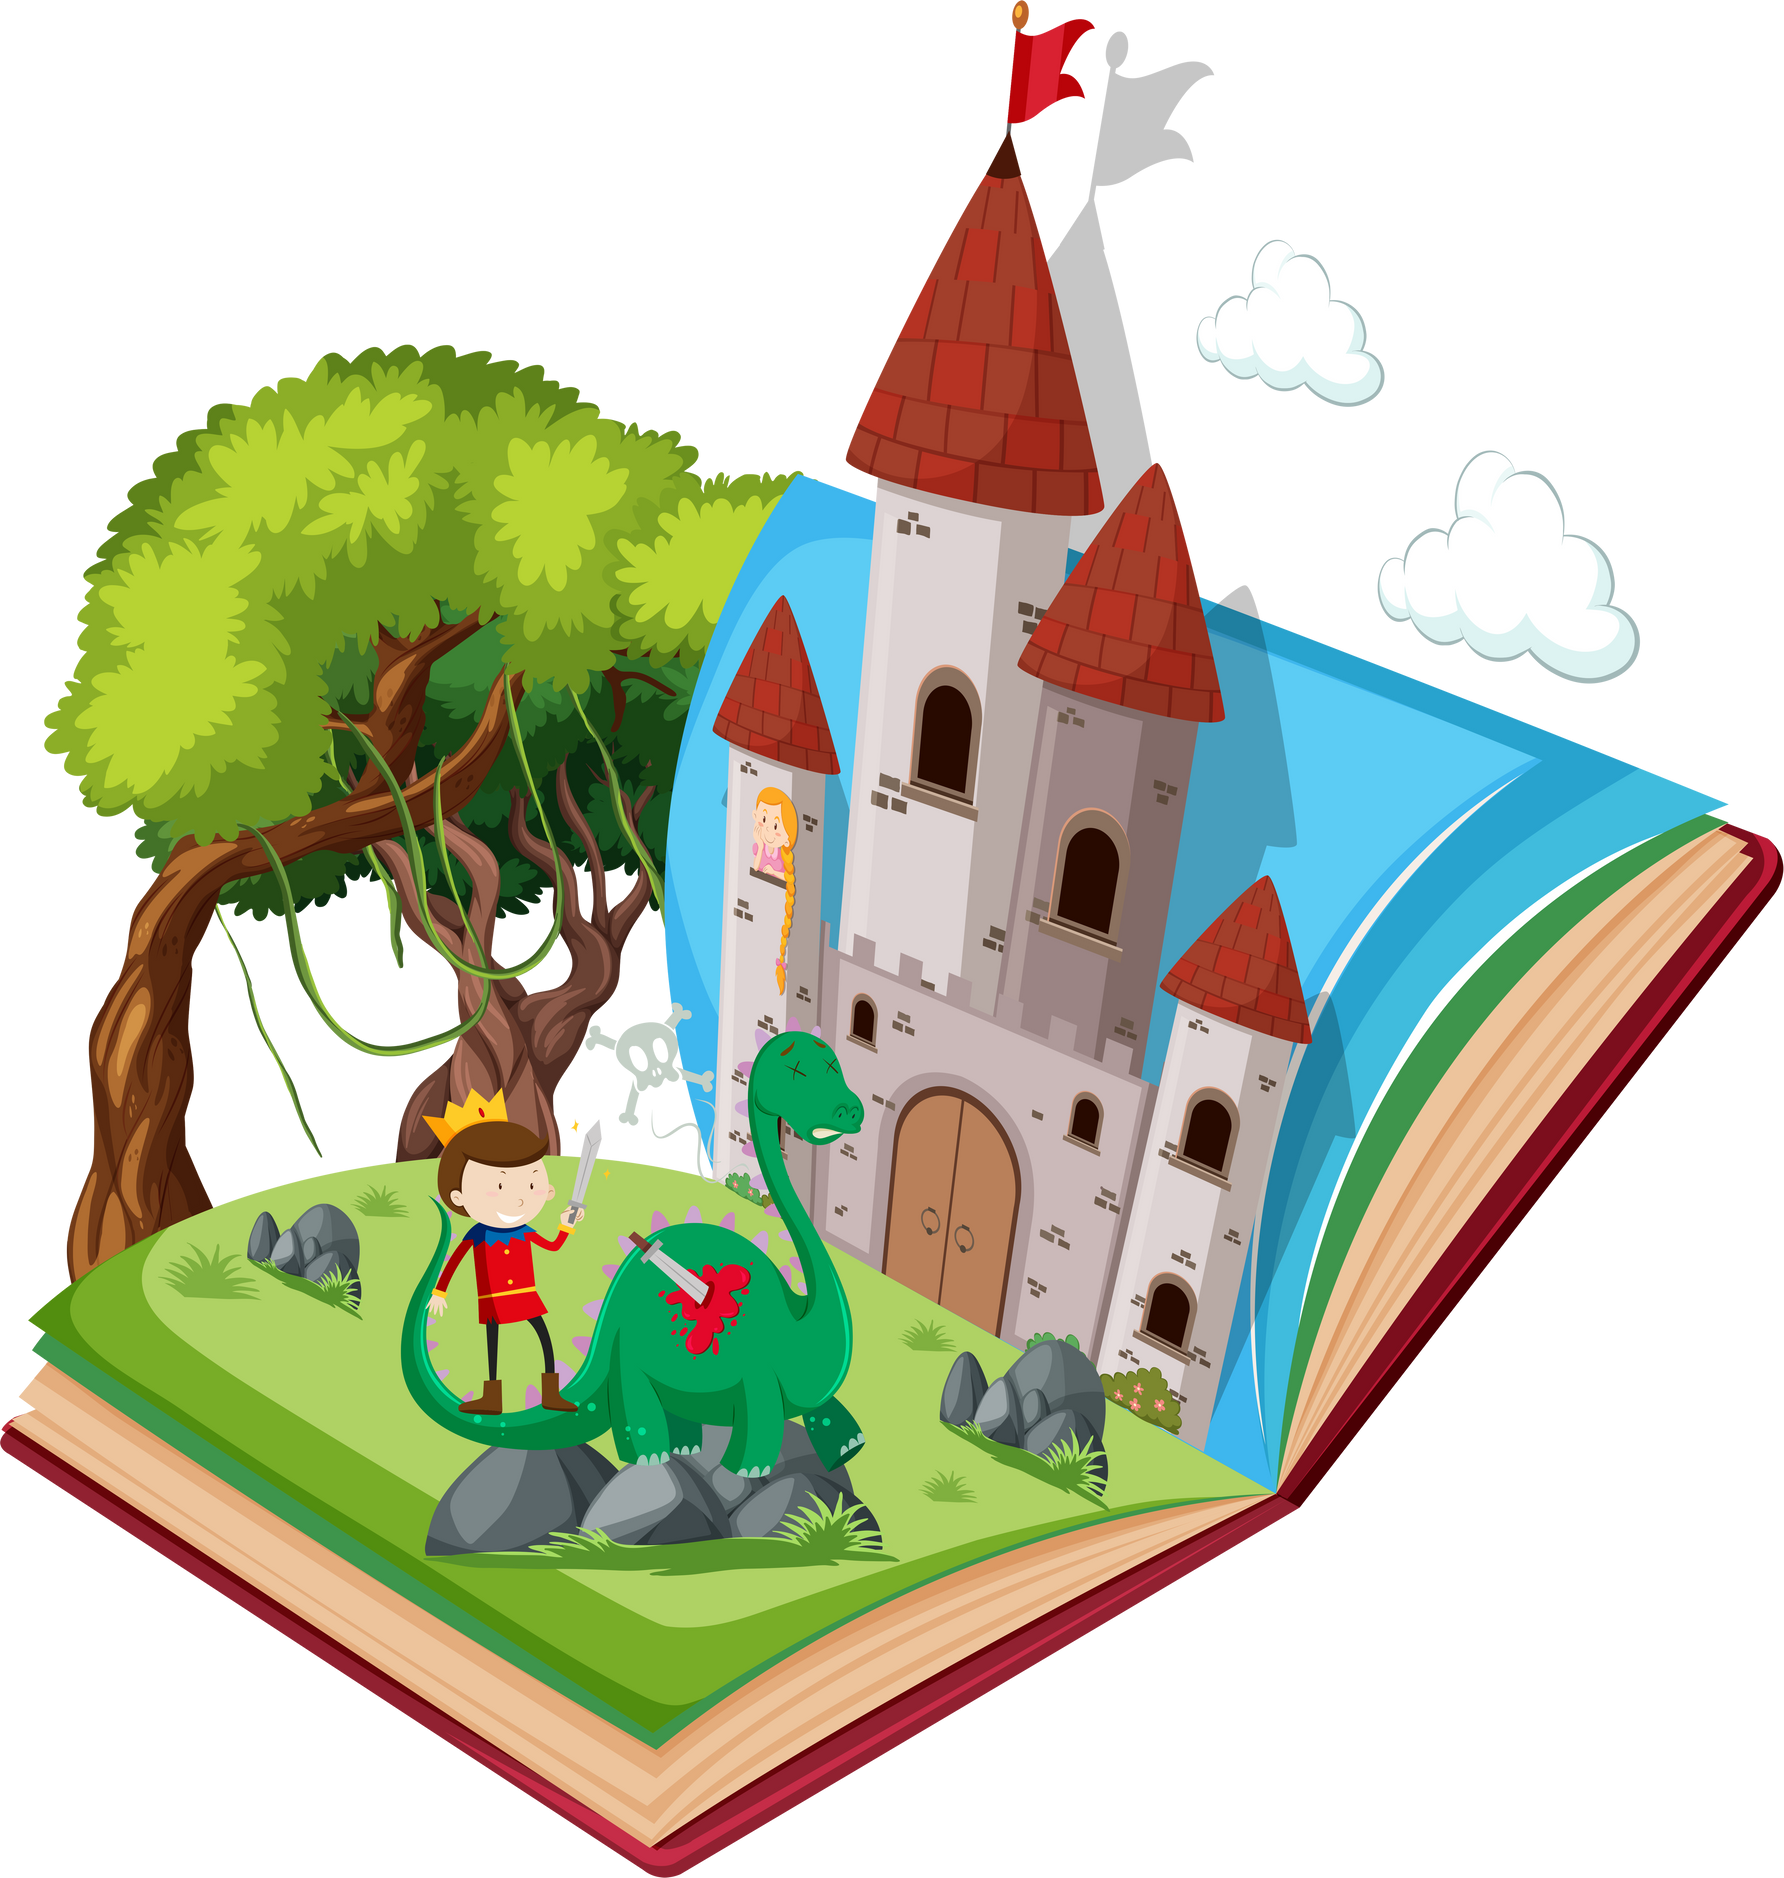 Fairy tale open book